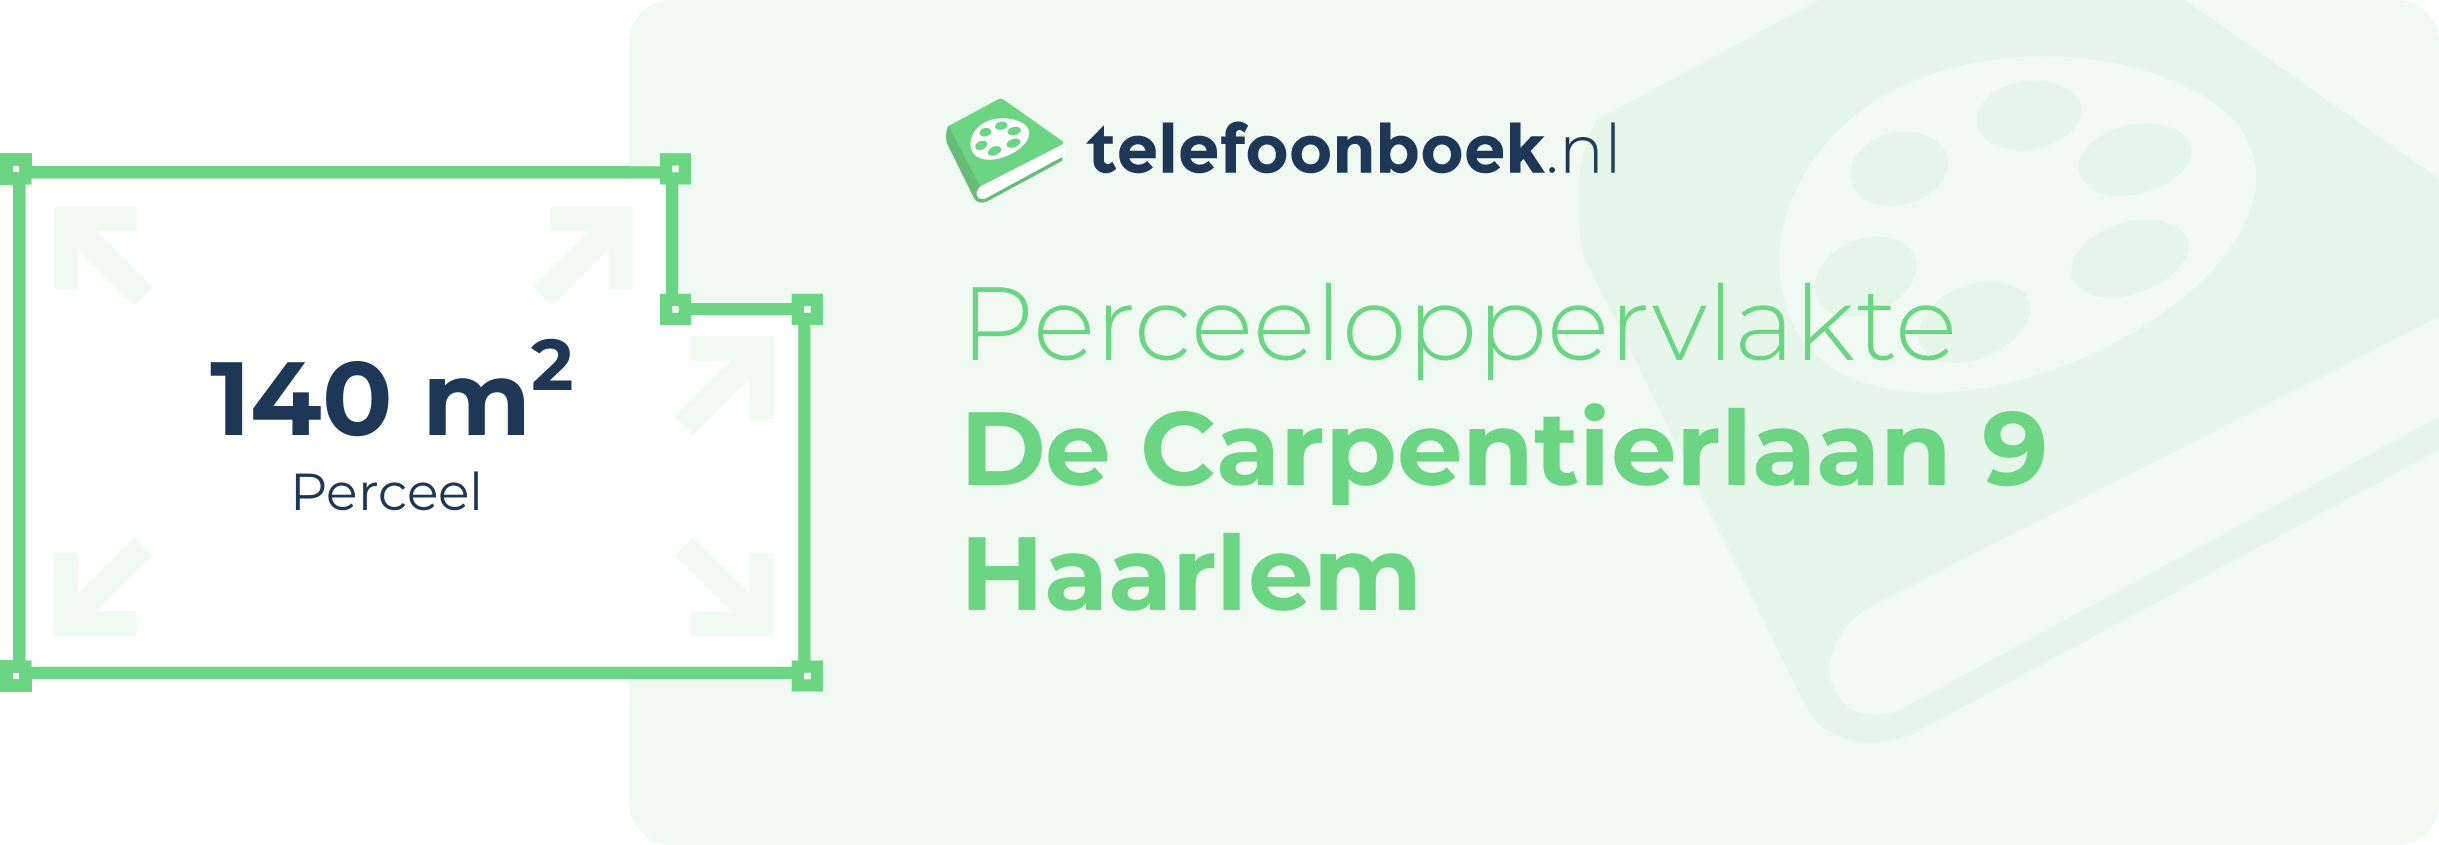 Perceeloppervlakte De Carpentierlaan 9 Haarlem